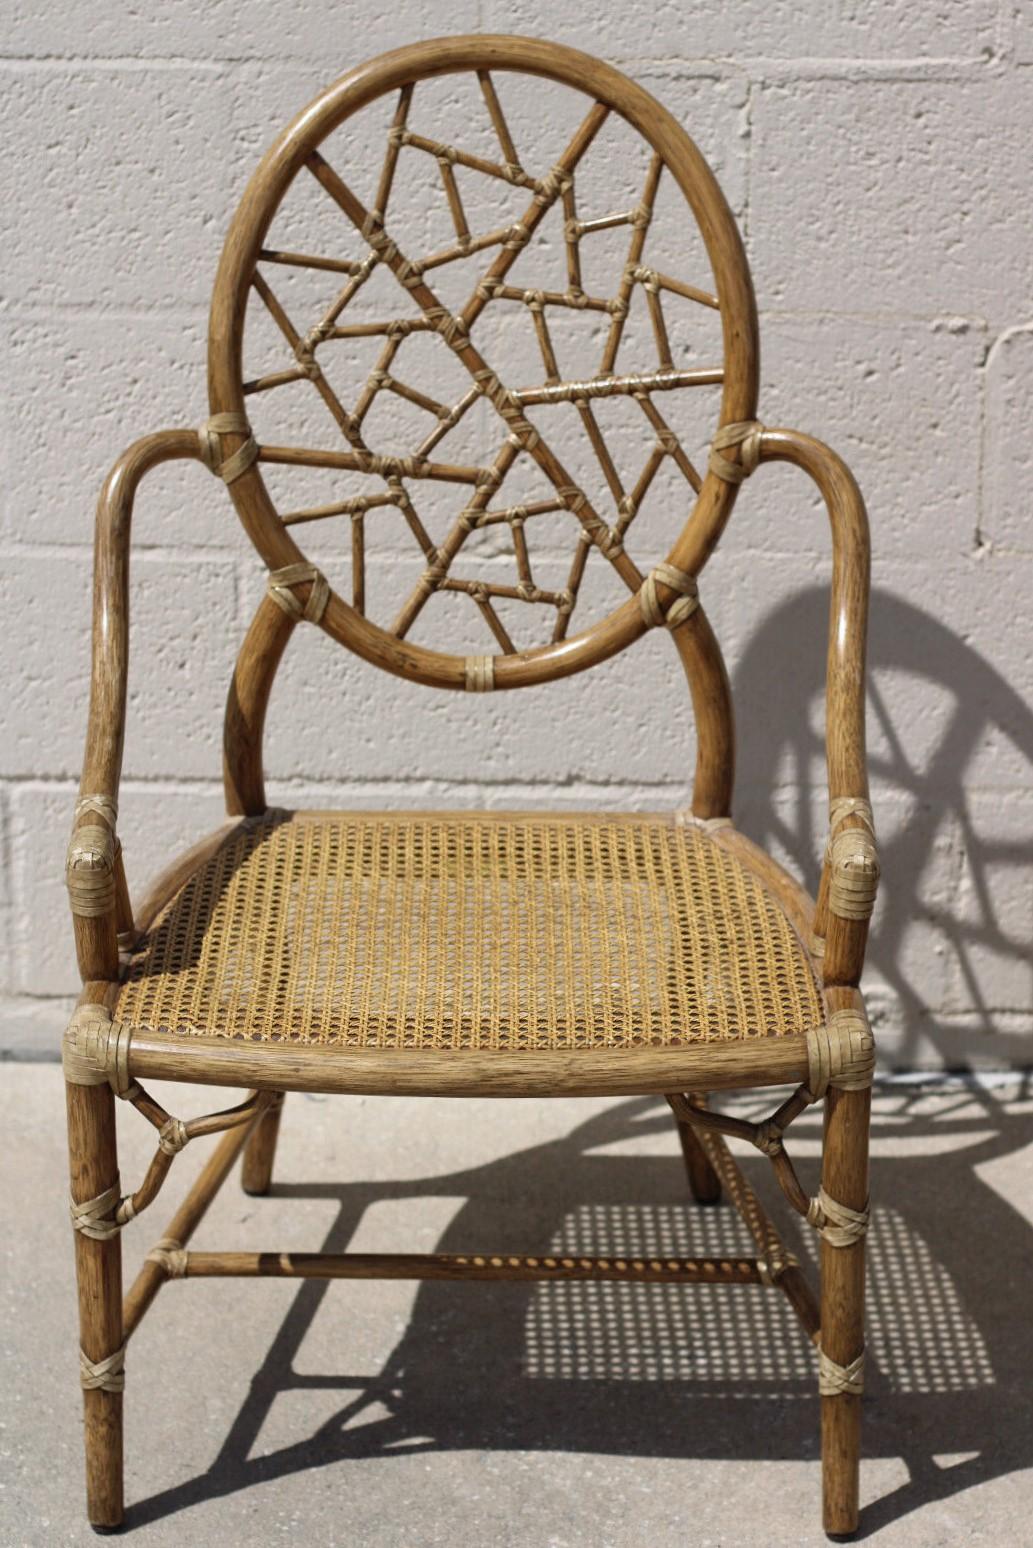 Un ensemble de quatre chaises iconiques en rotin à glace fissurée conçues par l'innovatrice de rupture Elinor McGuire. Le design est célèbre pour son dossier ovale en rotin qui encadre des pièces de rotin plus petites liées par du cuir brut, créant